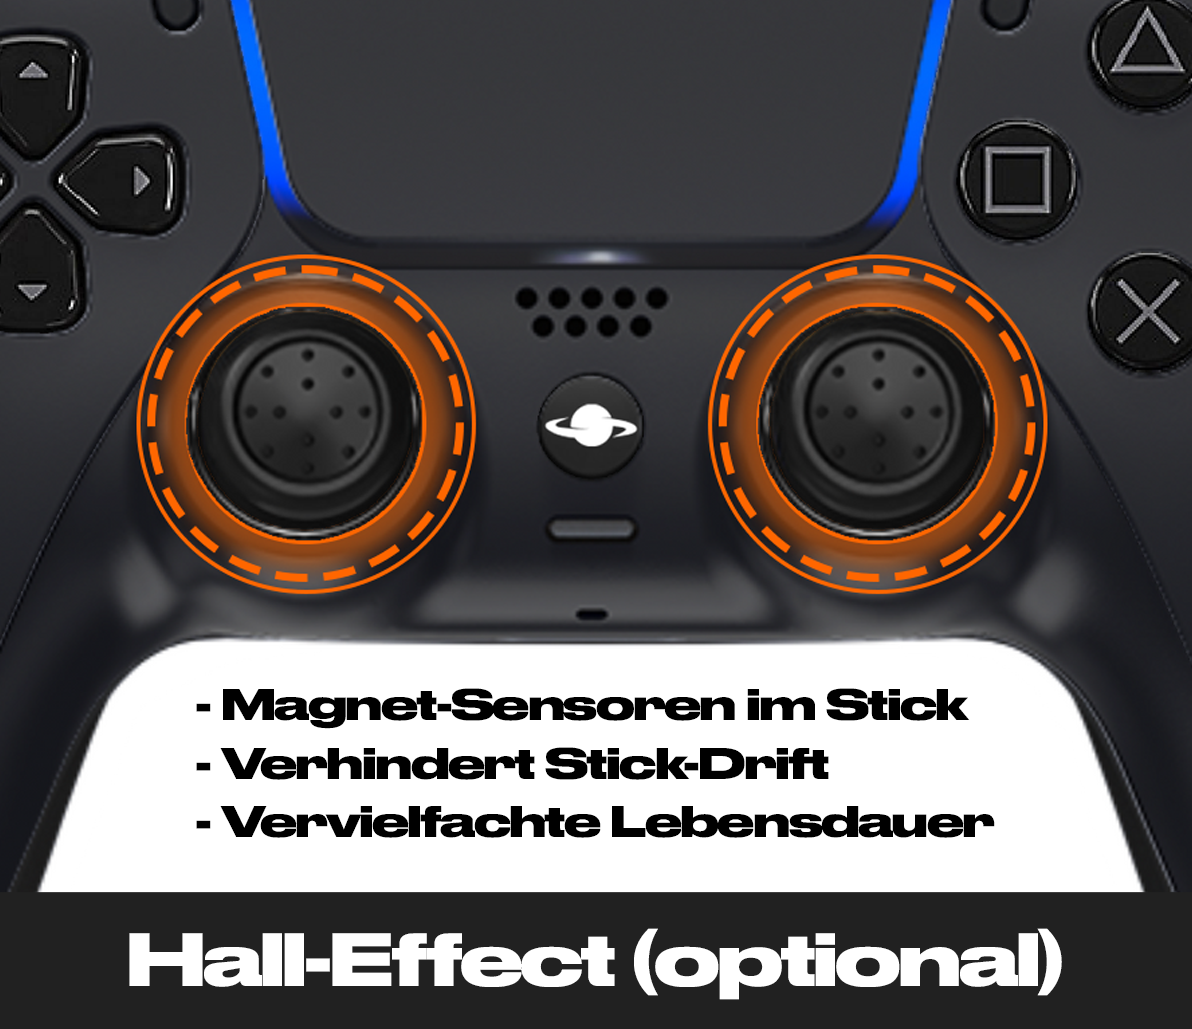 Controlador personalizado de PS5 'Colorsplash'